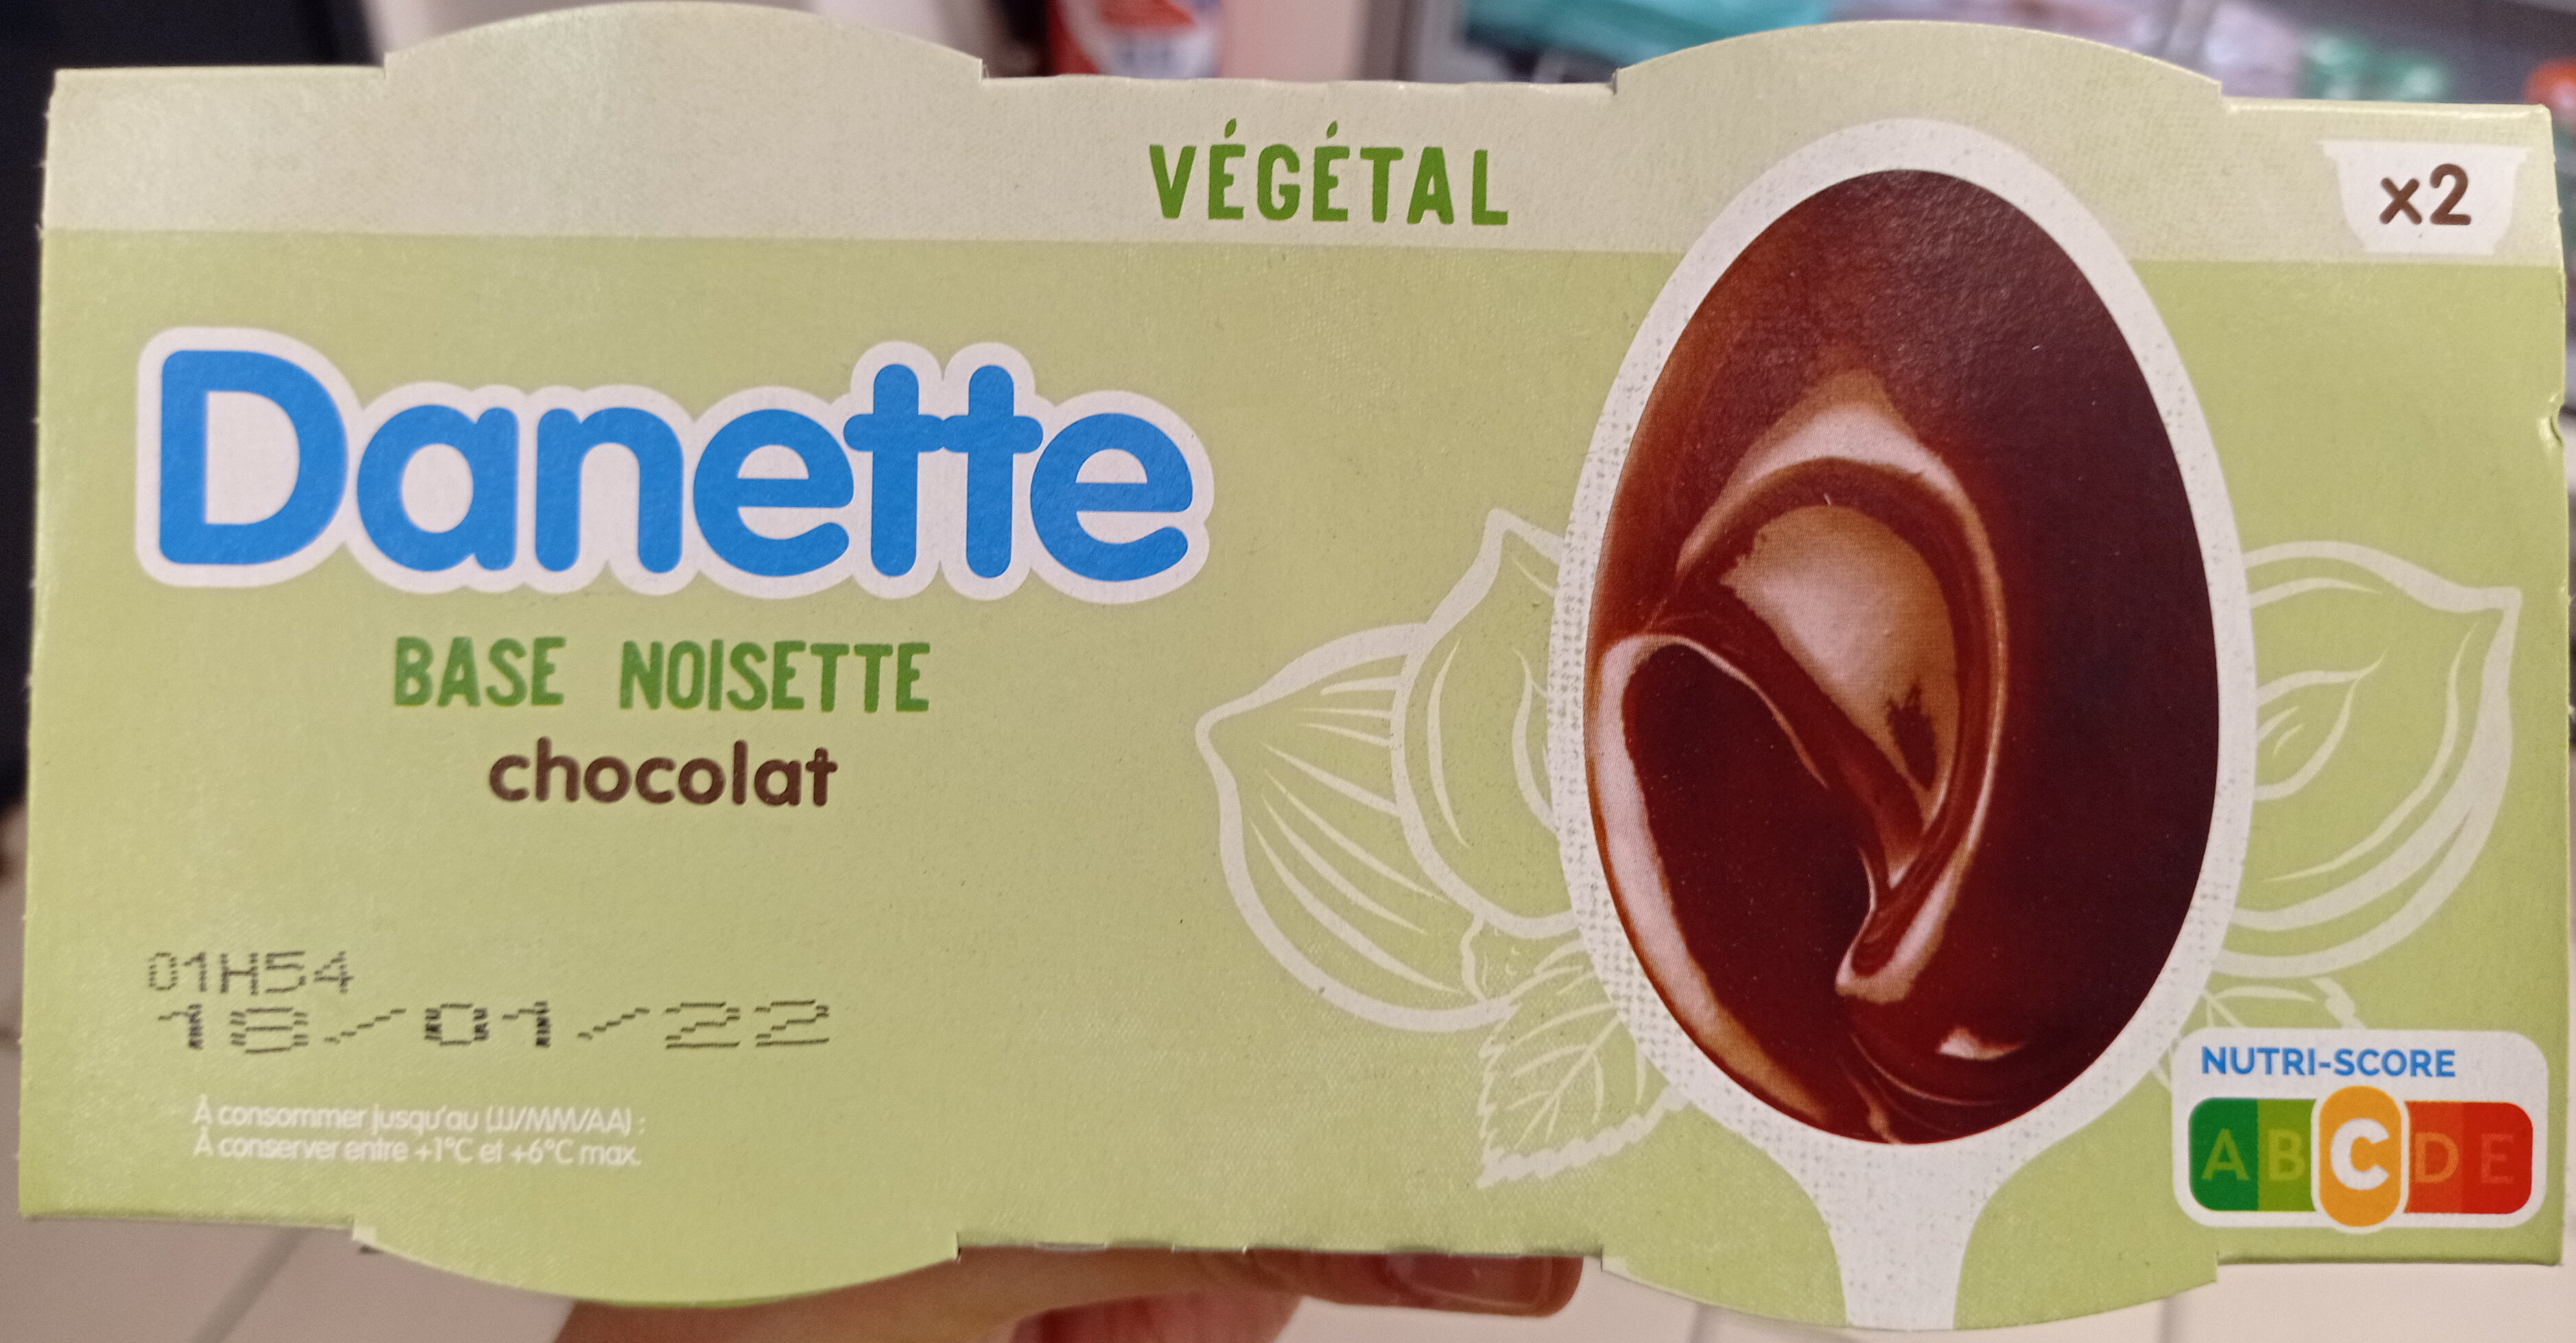 Danette base noisette chocolat - Product - fr